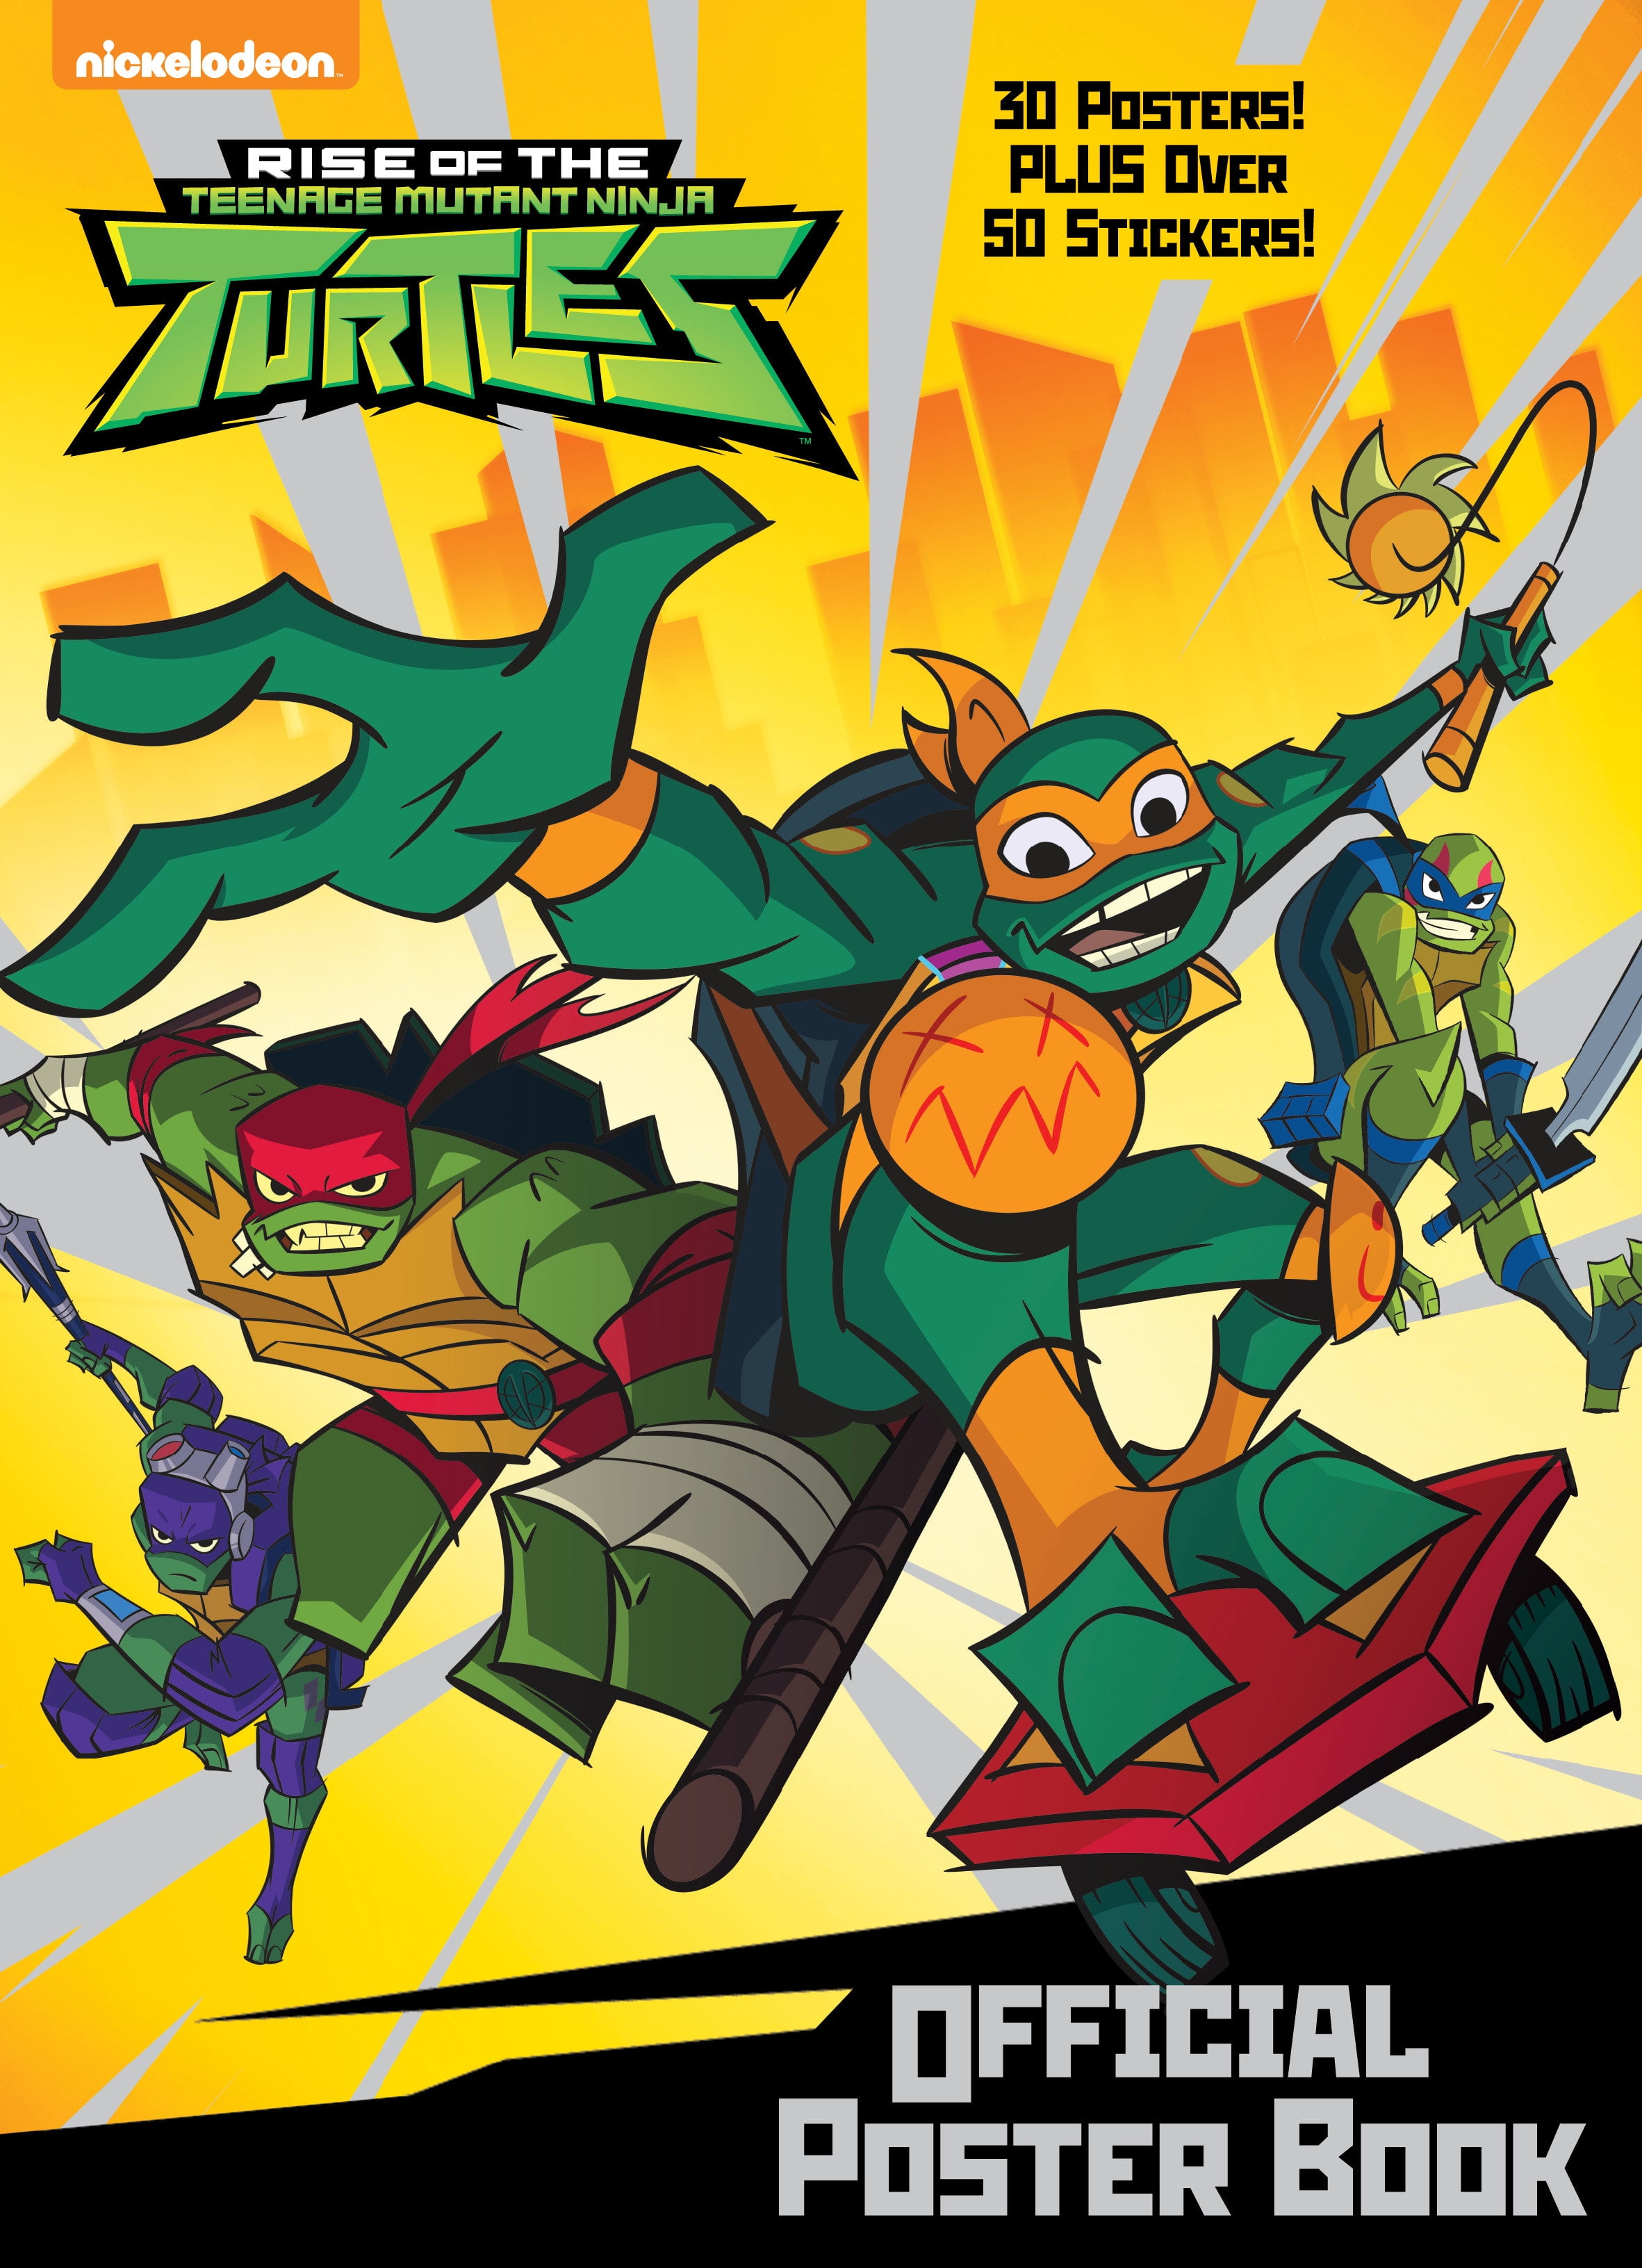 Rise of the Teenage Mutant Ninja Turtles: Official Poster Book (Rise of - Rise Of The Teenage Mutant Ninja Turtles